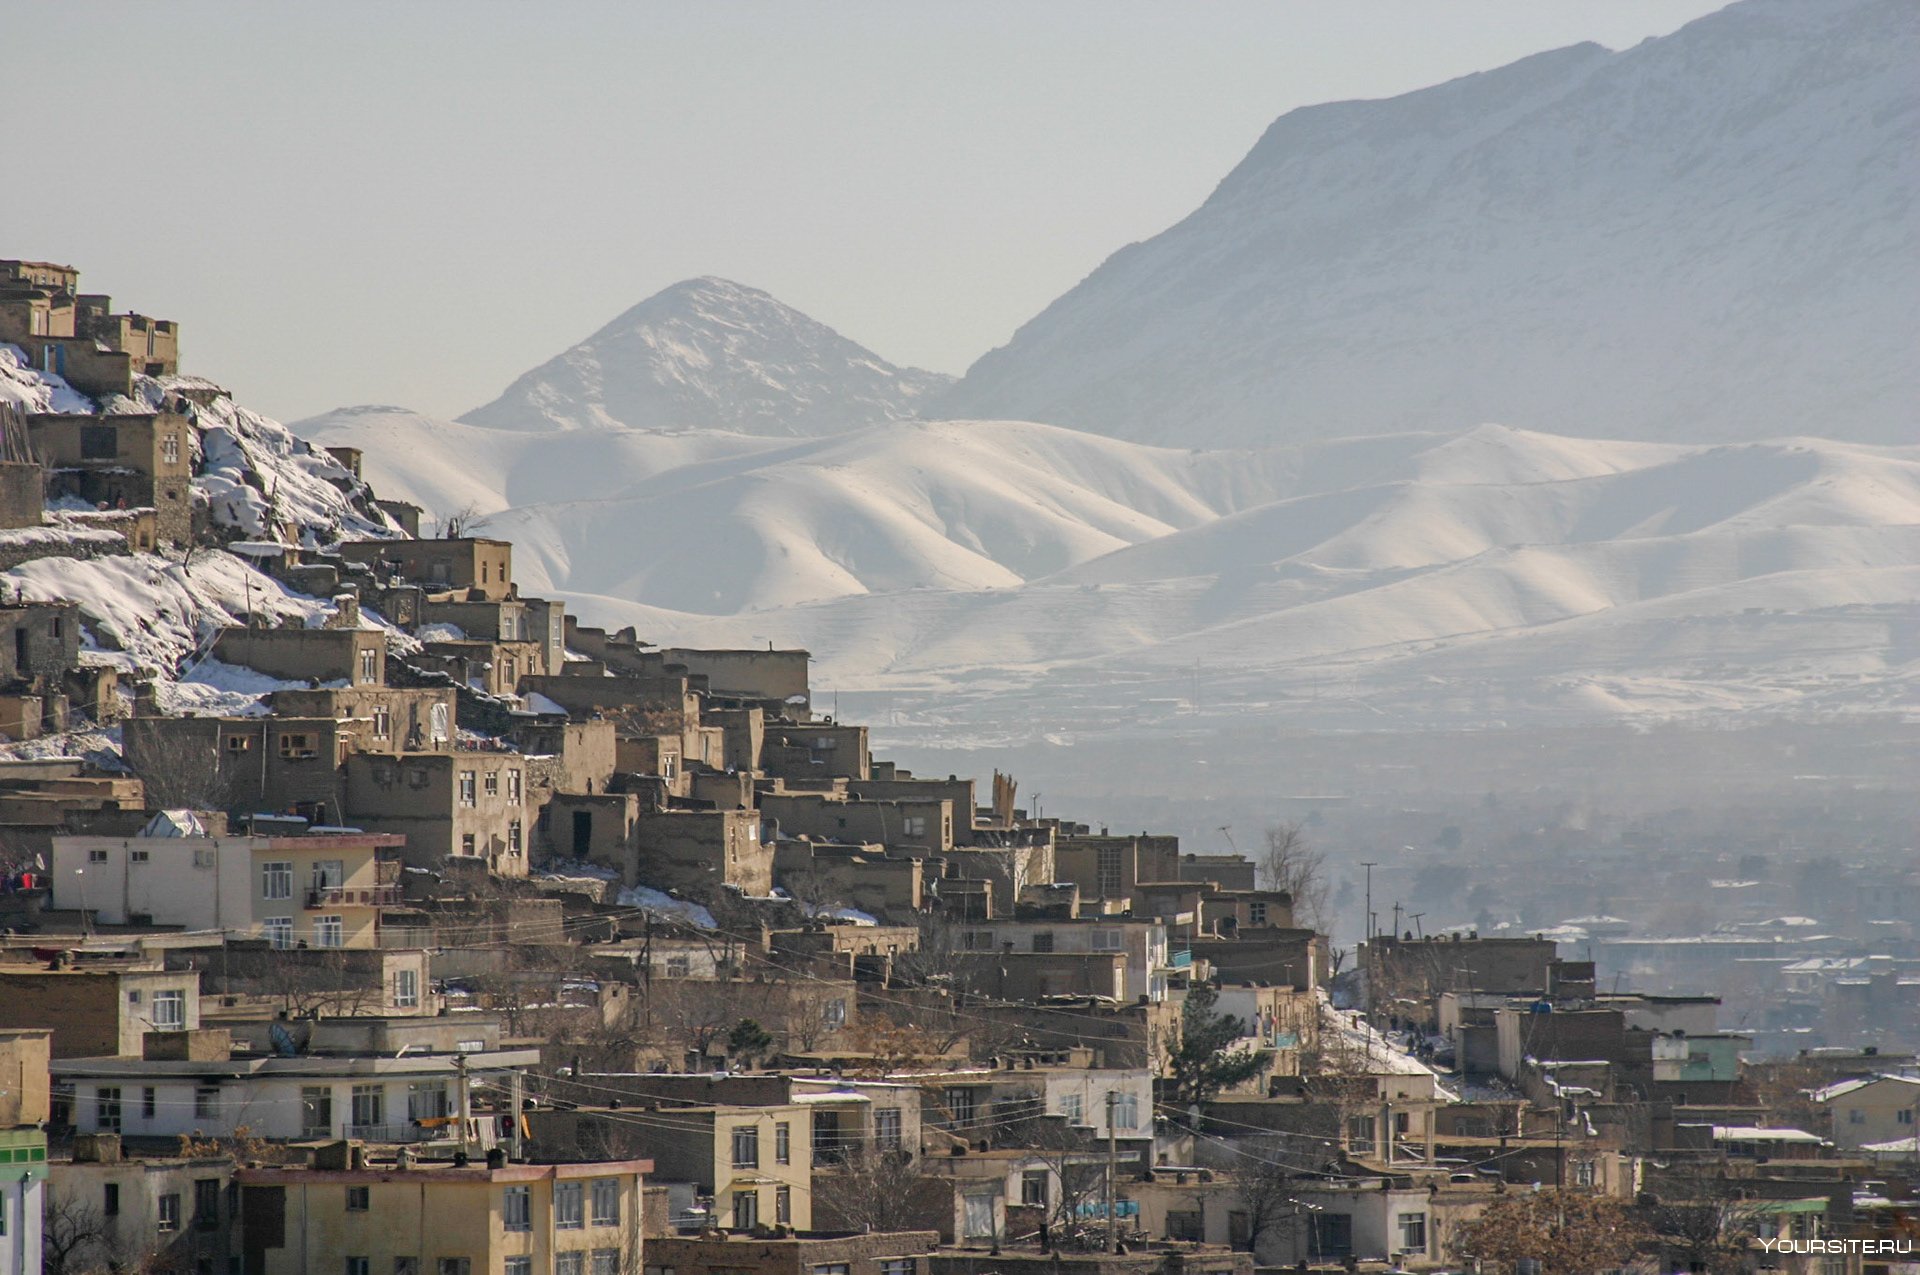 Об афганистане и афганцах: кабул, достопримечательности балха, мост дружбы в хайратоне — афганская граница